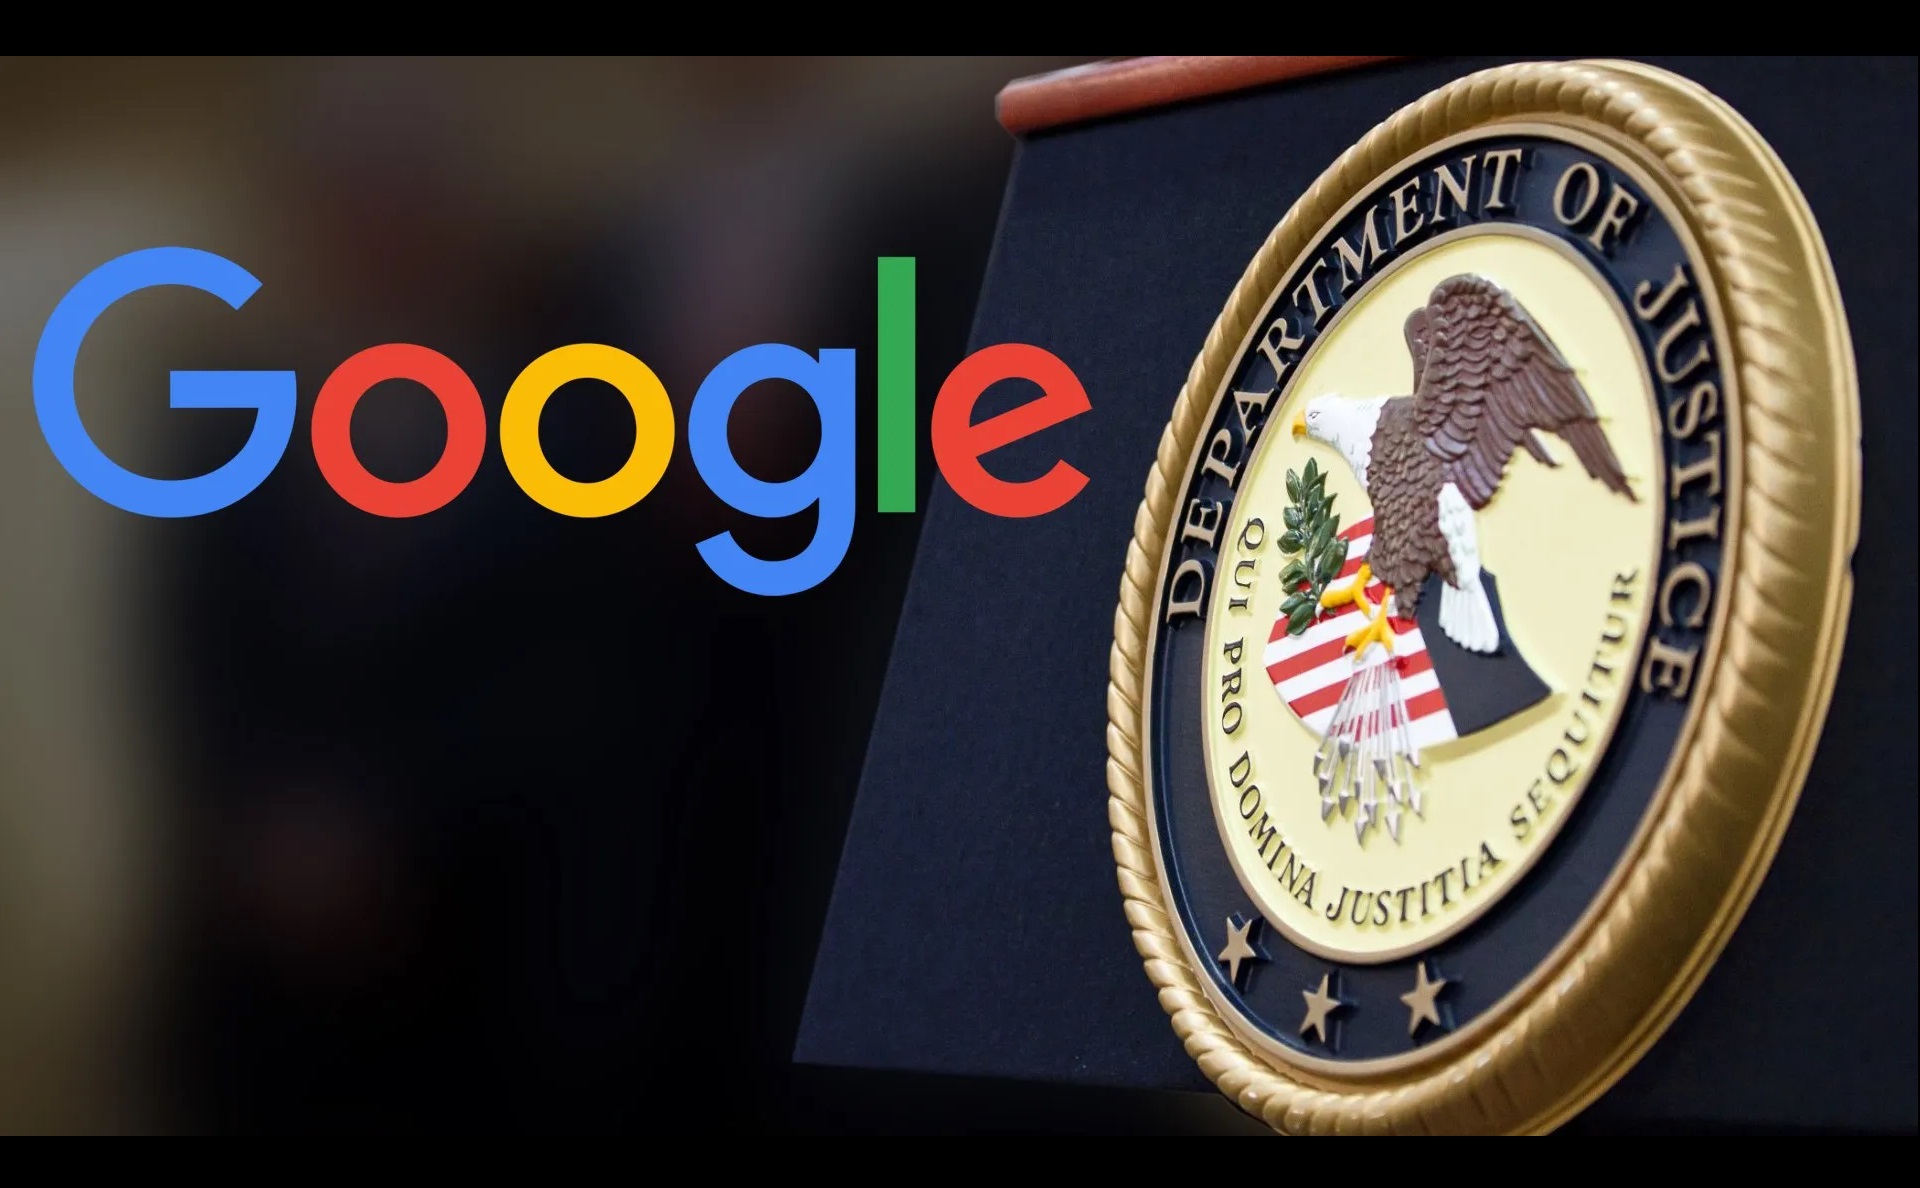 Tại sao Bộ Tư pháp Mỹ lại kiện Google vì độc quyền?